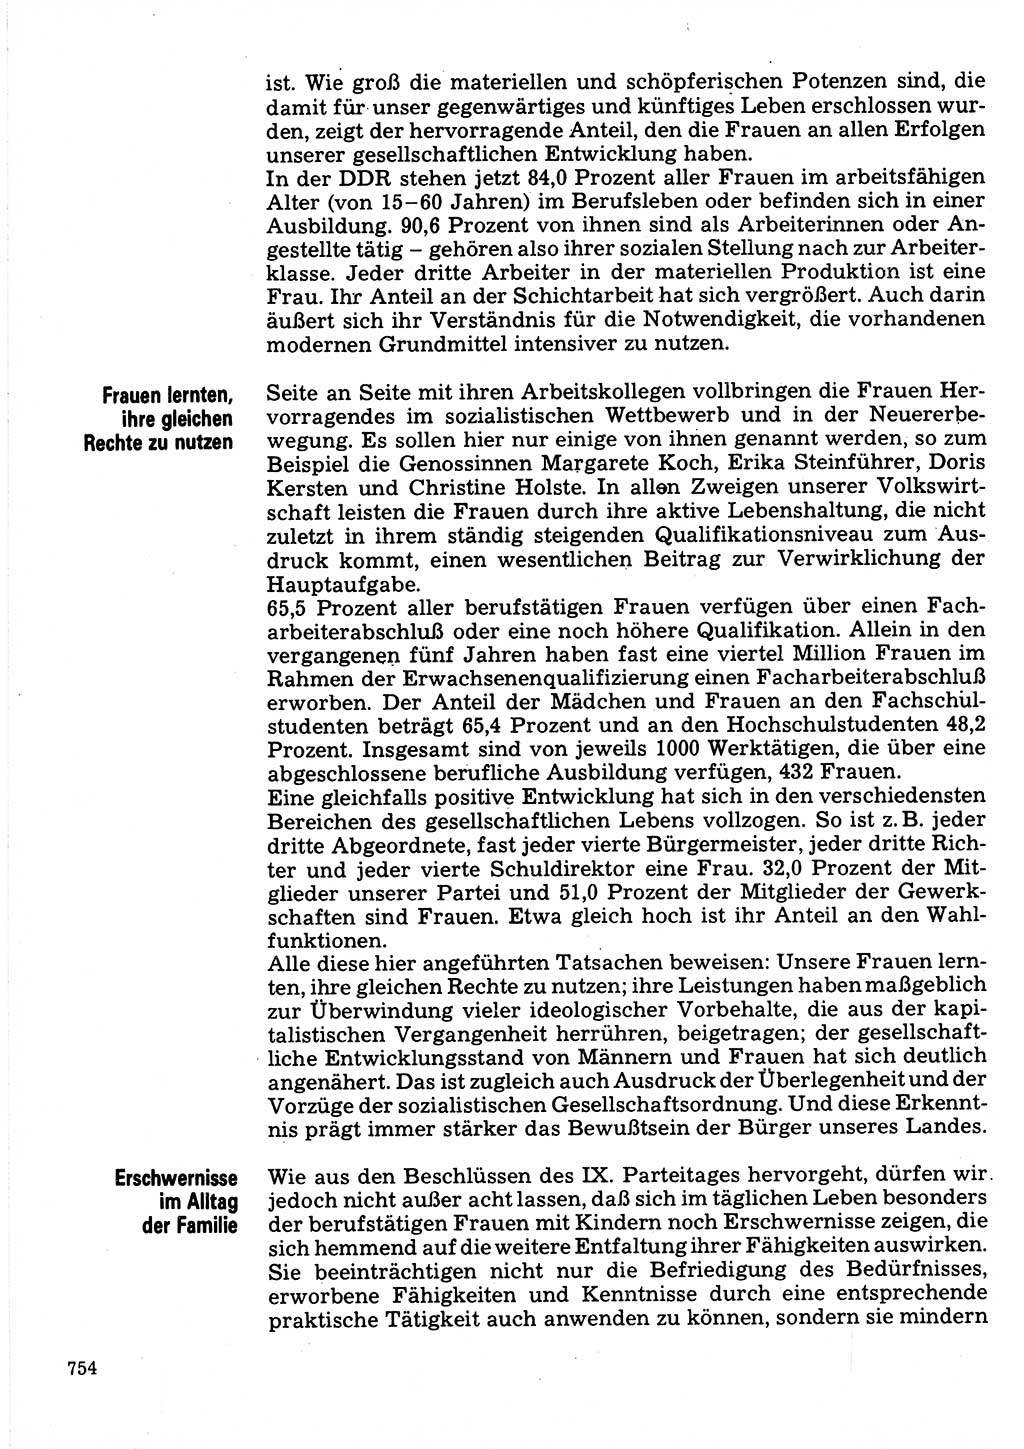 Neuer Weg (NW), Organ des Zentralkomitees (ZK) der SED (Sozialistische Einheitspartei Deutschlands) für Fragen des Parteilebens, 32. Jahrgang [Deutsche Demokratische Republik (DDR)] 1977, Seite 754 (NW ZK SED DDR 1977, S. 754)